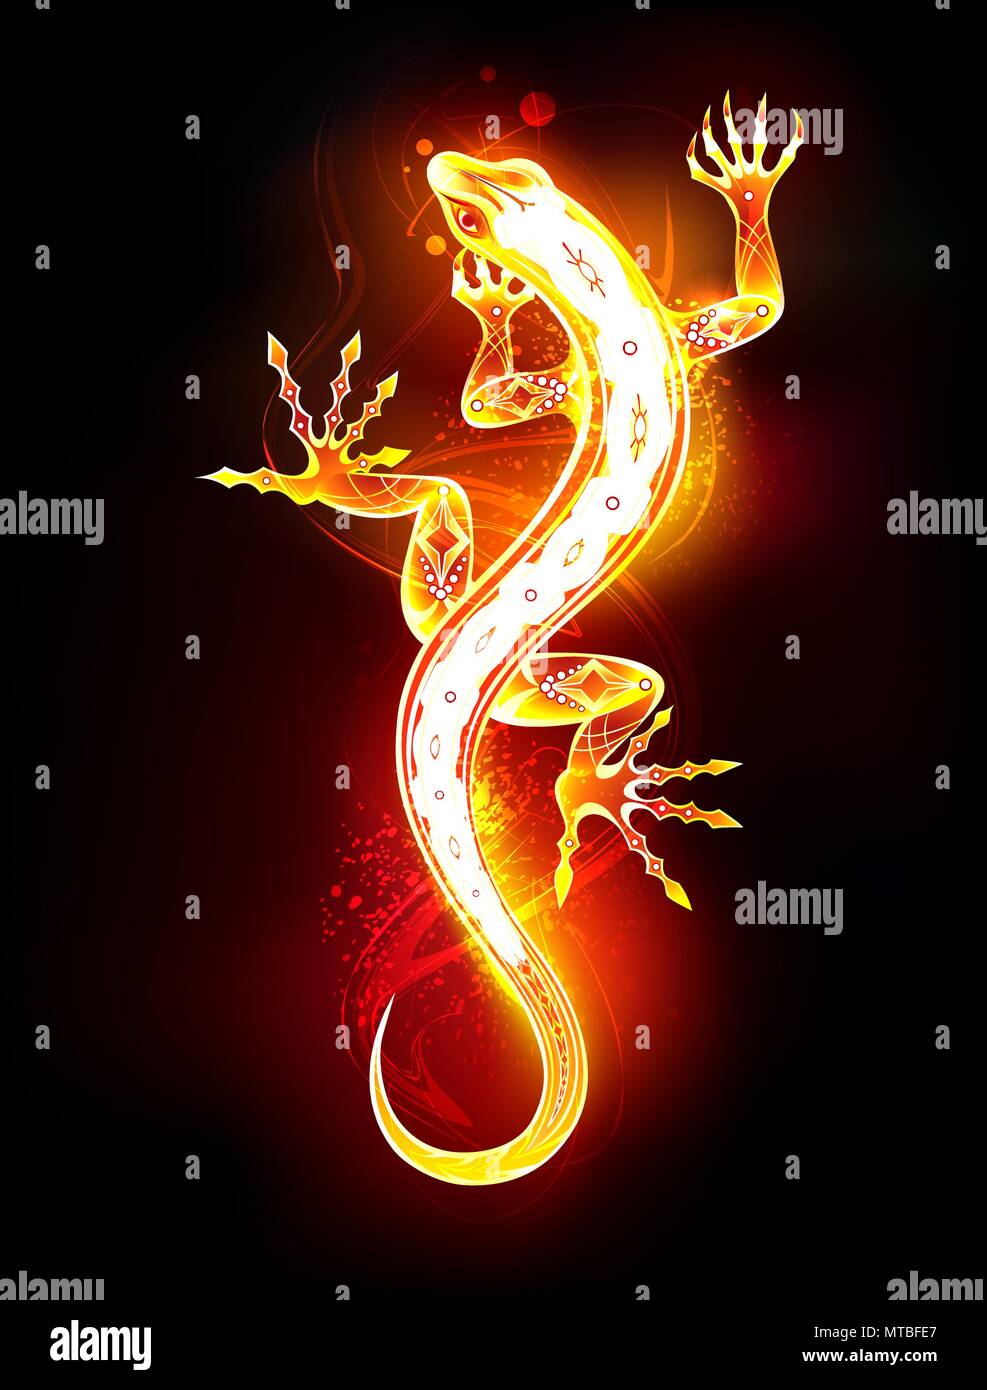 Salamandre dessinée artistique du feu et flamme sur fond noir. Illustration de Vecteur